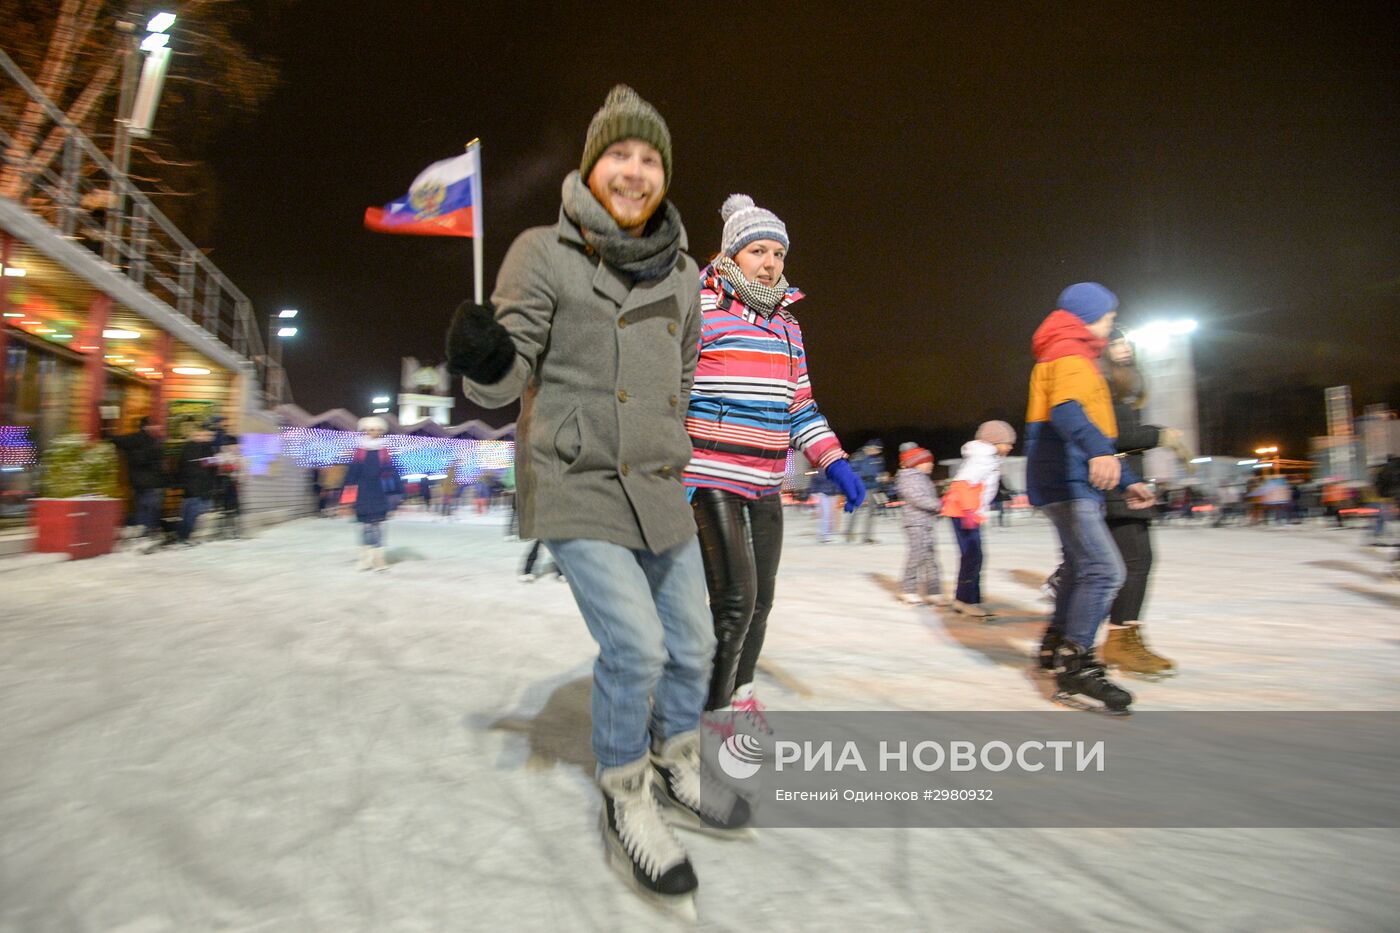 Открытие катка "Лёд" в парке Сокольники